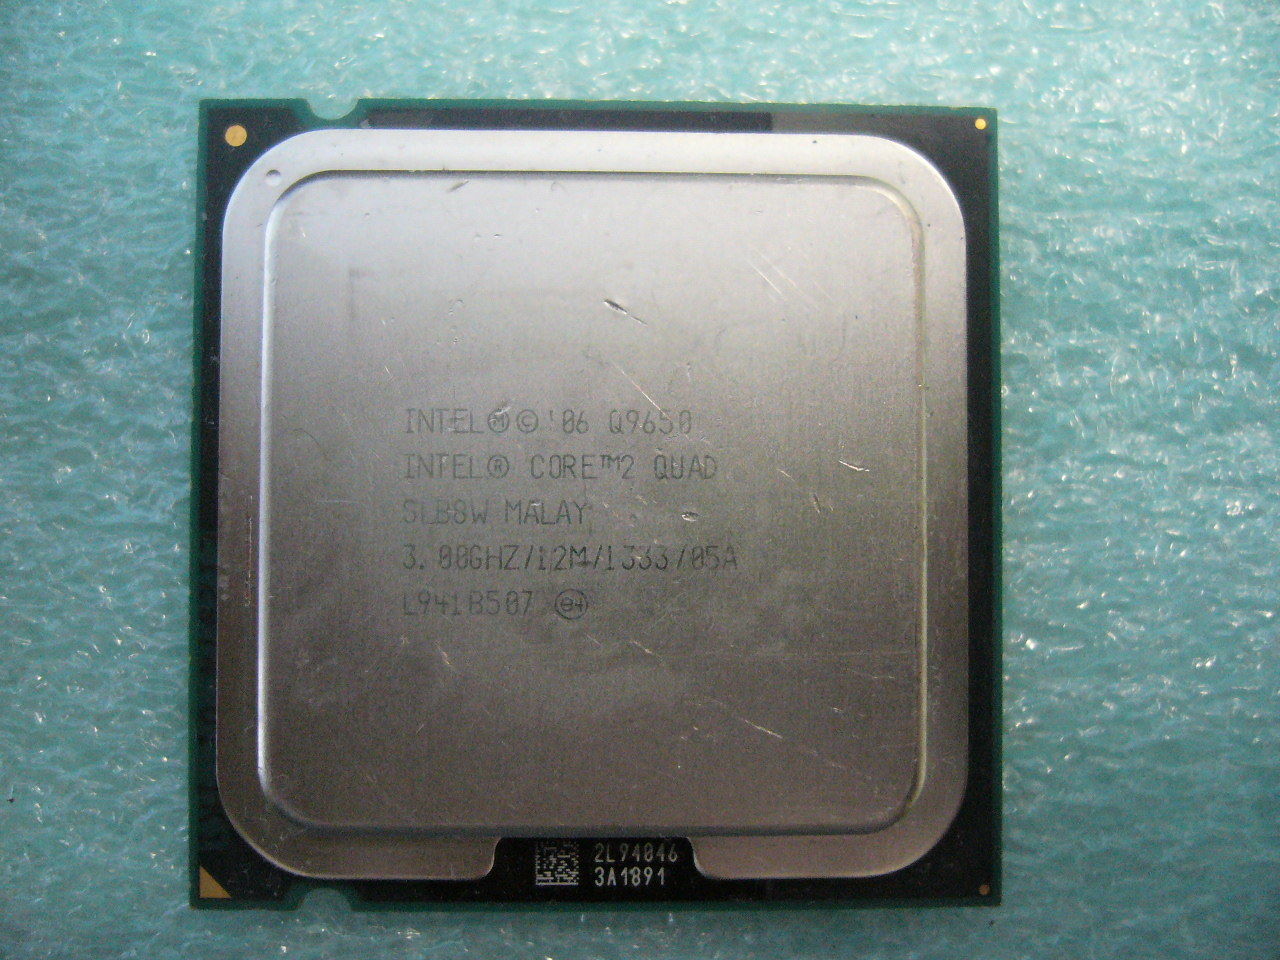 QTY 1x INTEL Core2 Quad Q9650 CPU 3.00GHz/12MB/1333Mhz LGA775 SLB8W - Click Image to Close